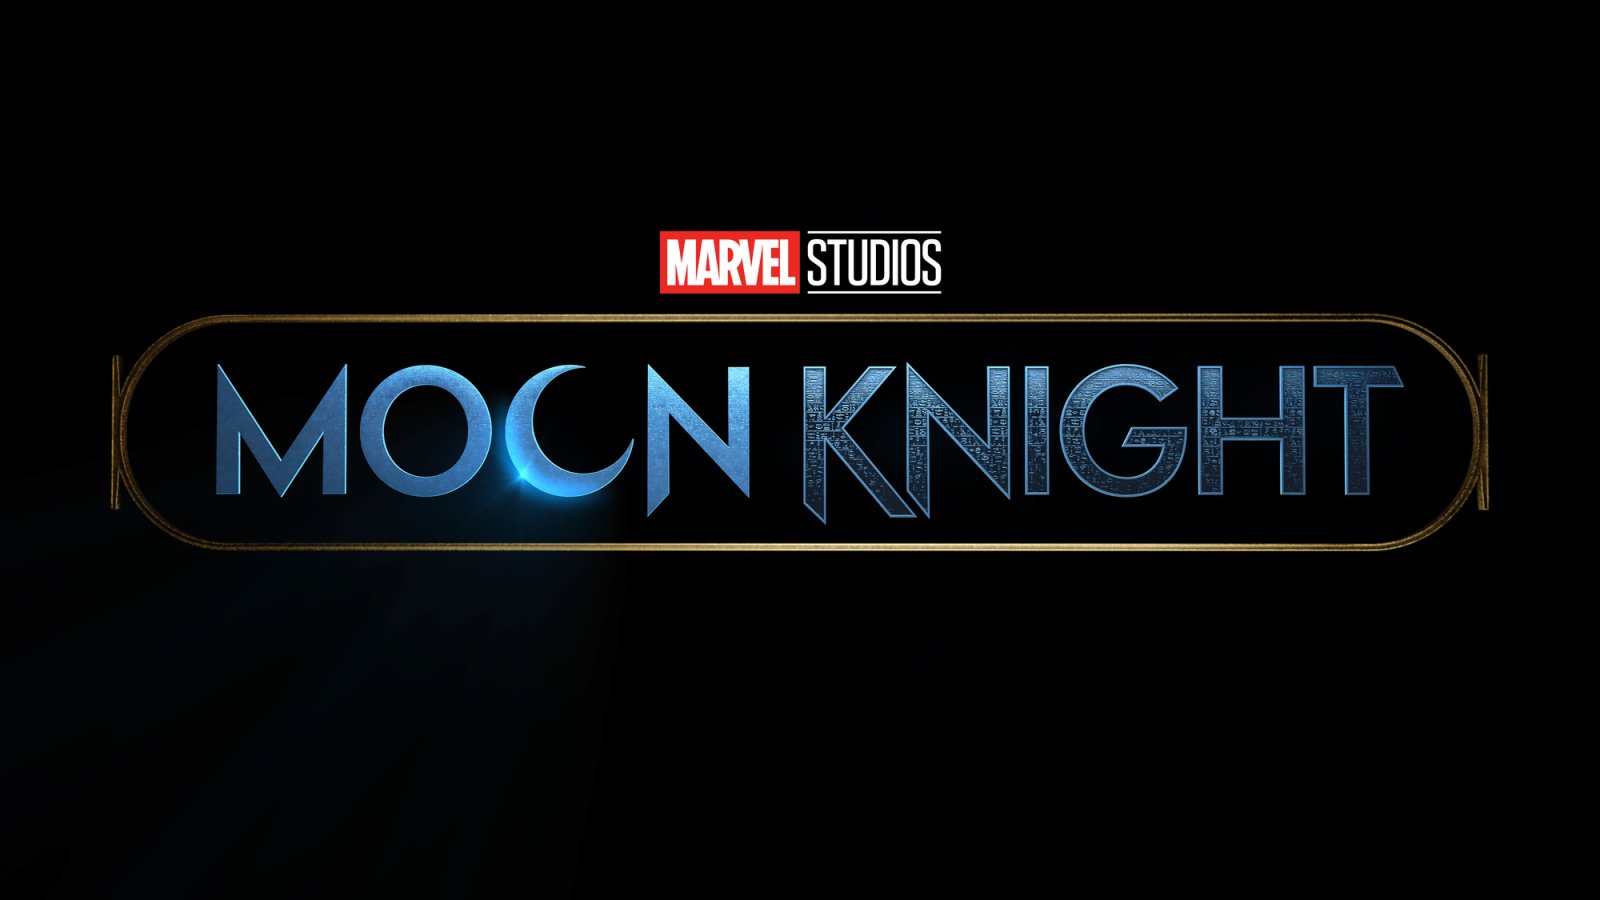 30 mars släpps Marvels Moon Knight med Oscar Isaac